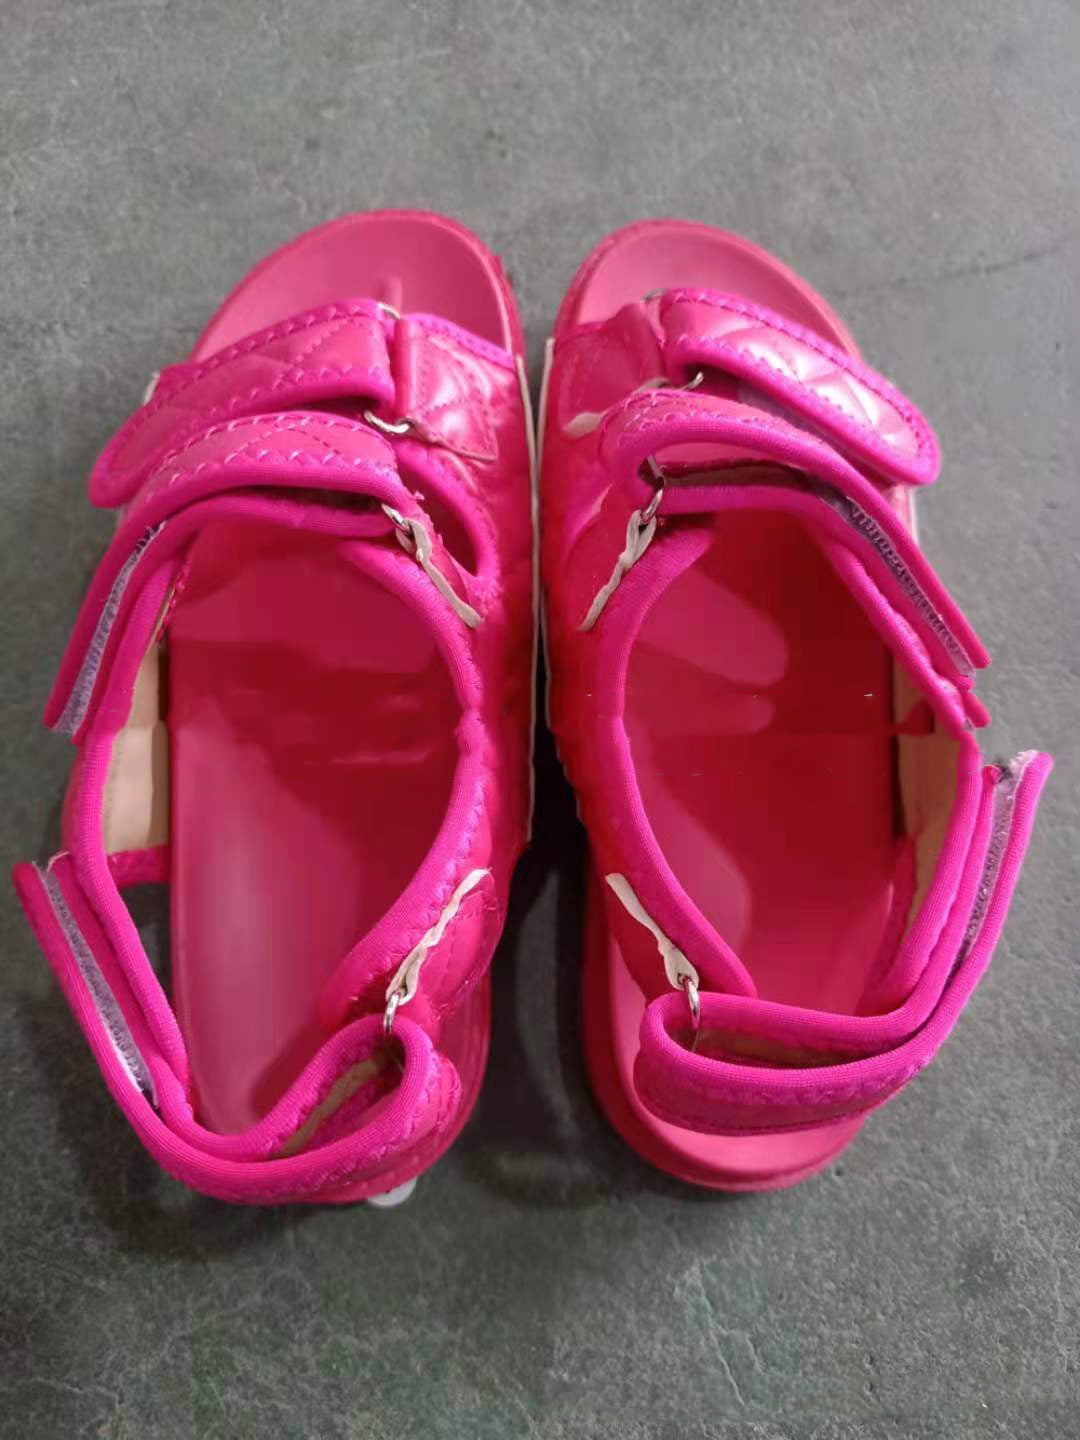 Velcro Sandals Women Beach Sandals - ladieskits - 0